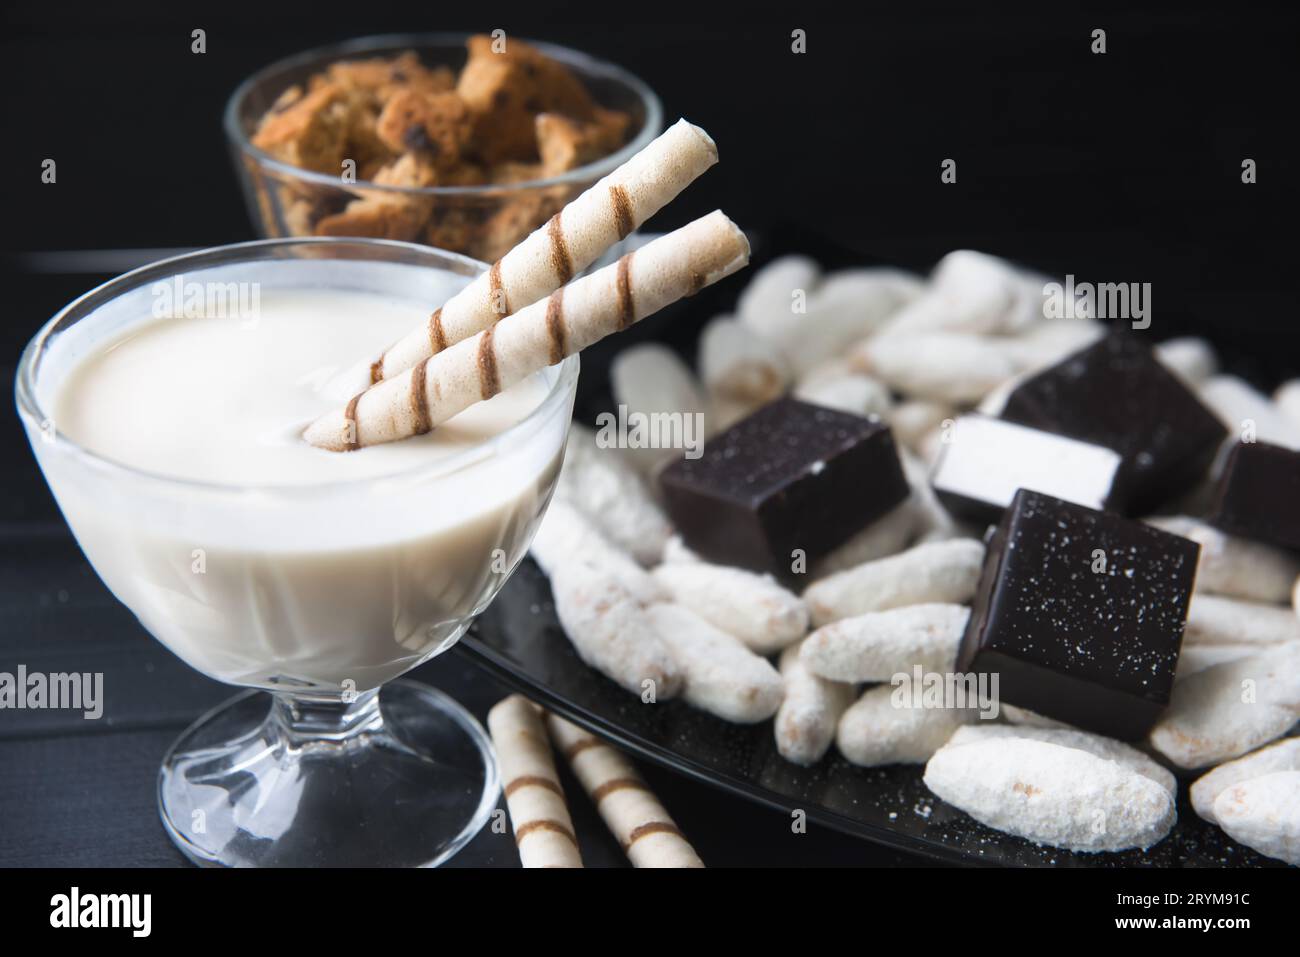 Bonbons, pailles dans la crème, biscuits et bonbons sur la table Banque D'Images